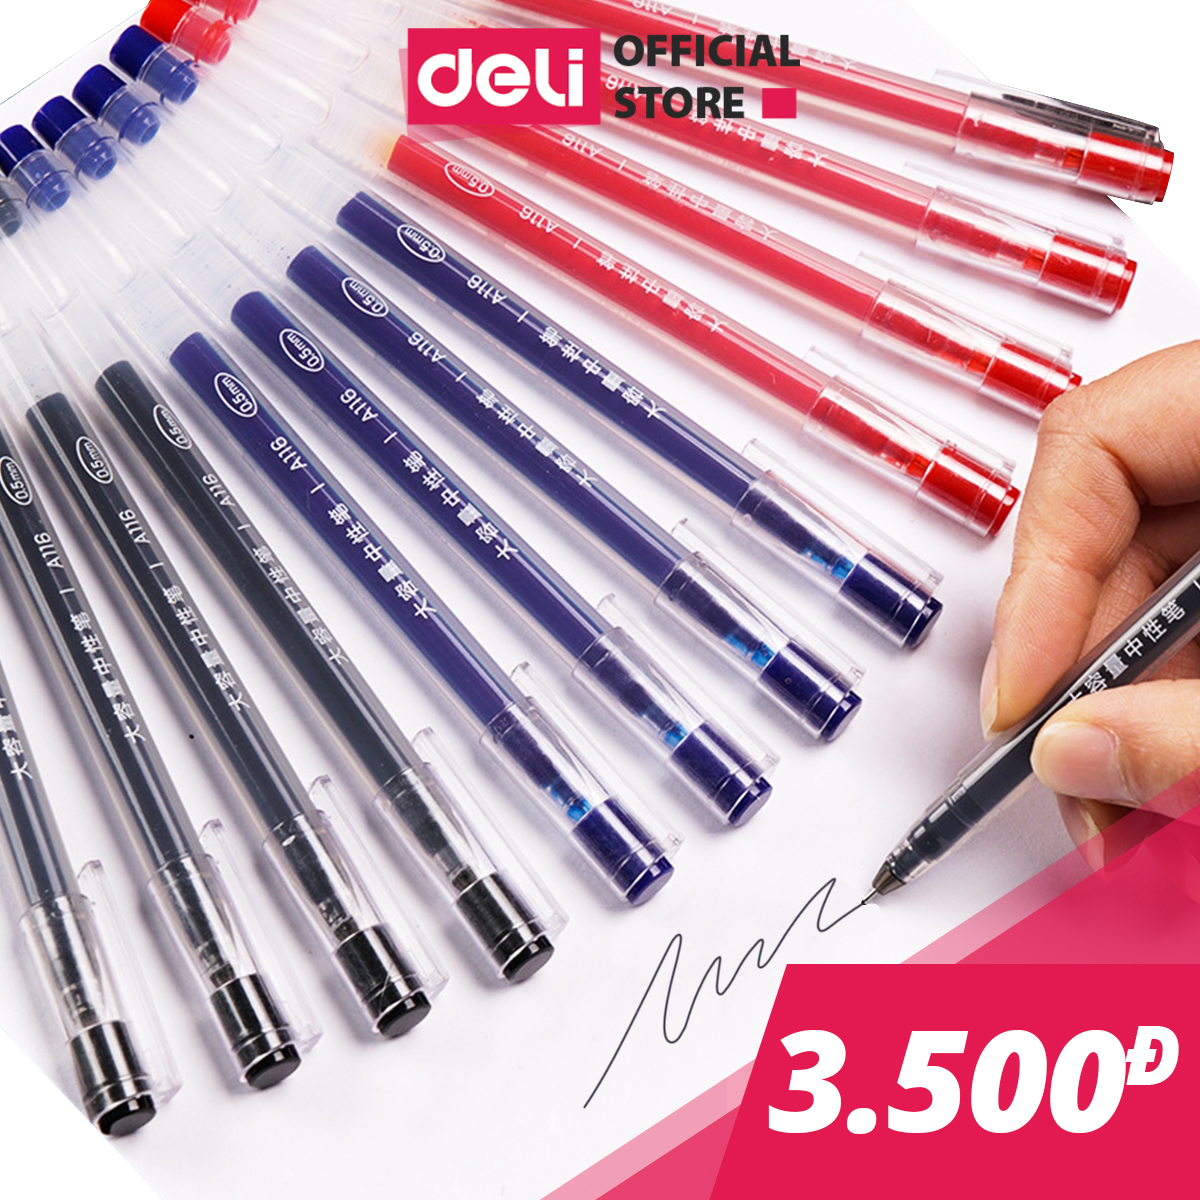 Bút gel 0.5mm Deli nhiều màu lựa chọn - Bút bi nước -  1 chiếc - Mực đỏ / Xanh / Đen - A116